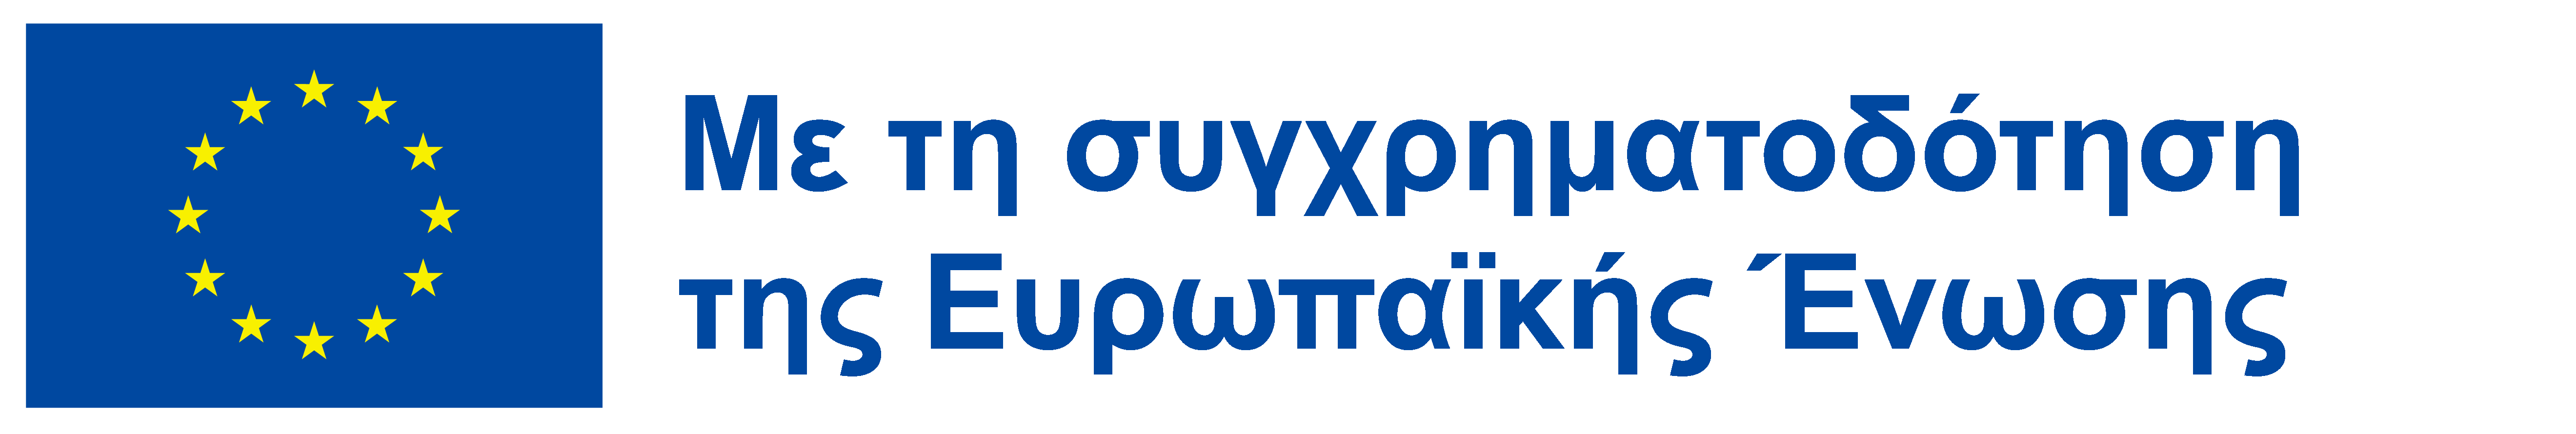 Emblem EU